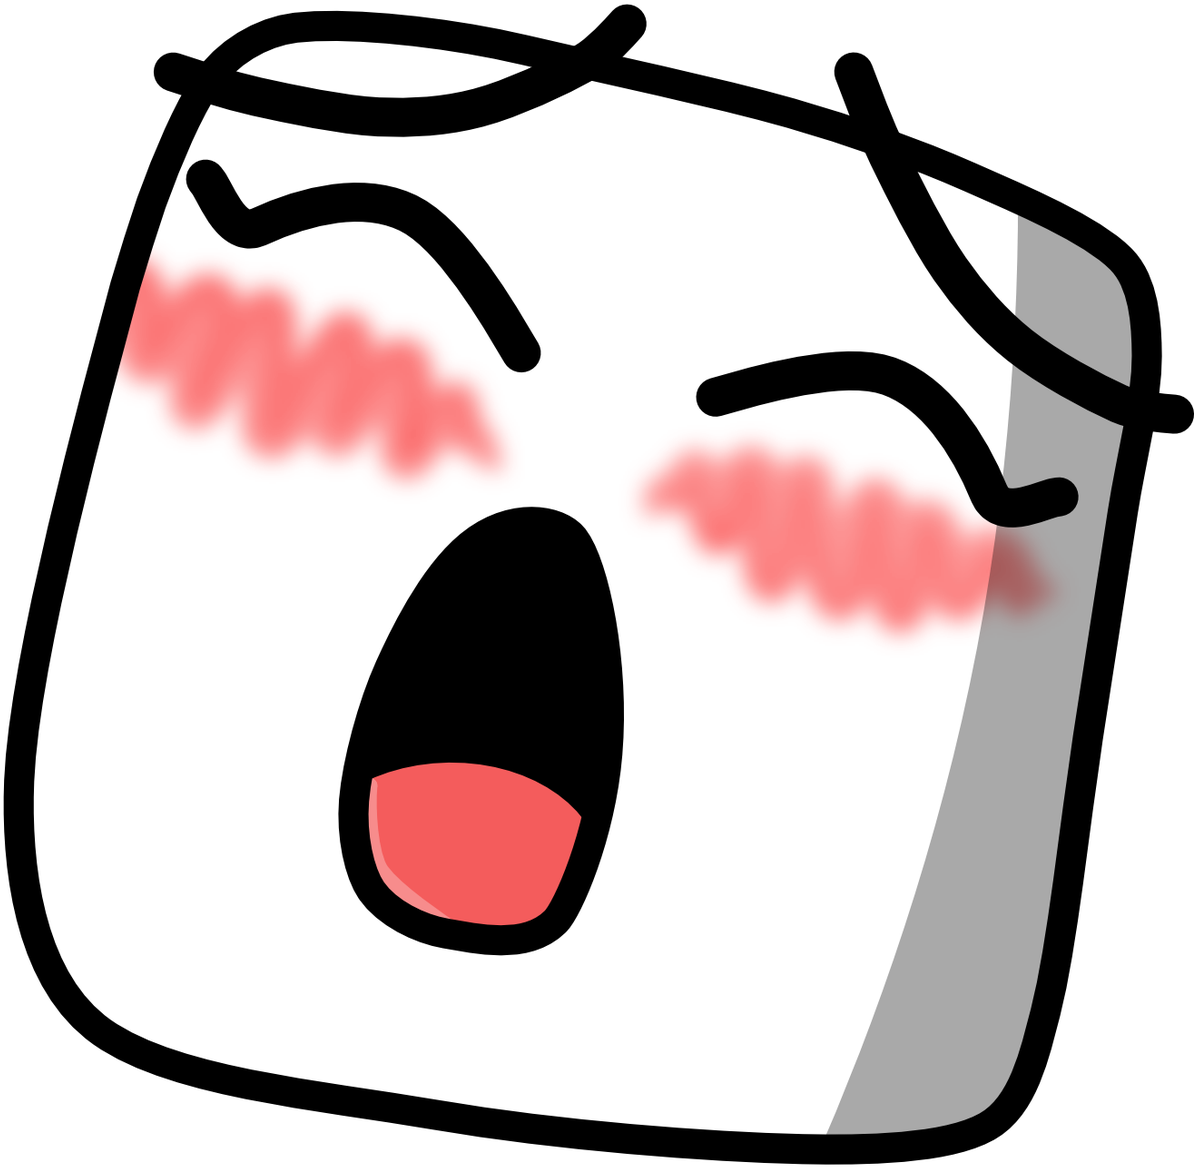 Ohtofu - Gasm Discord Emotes (1200x1200)